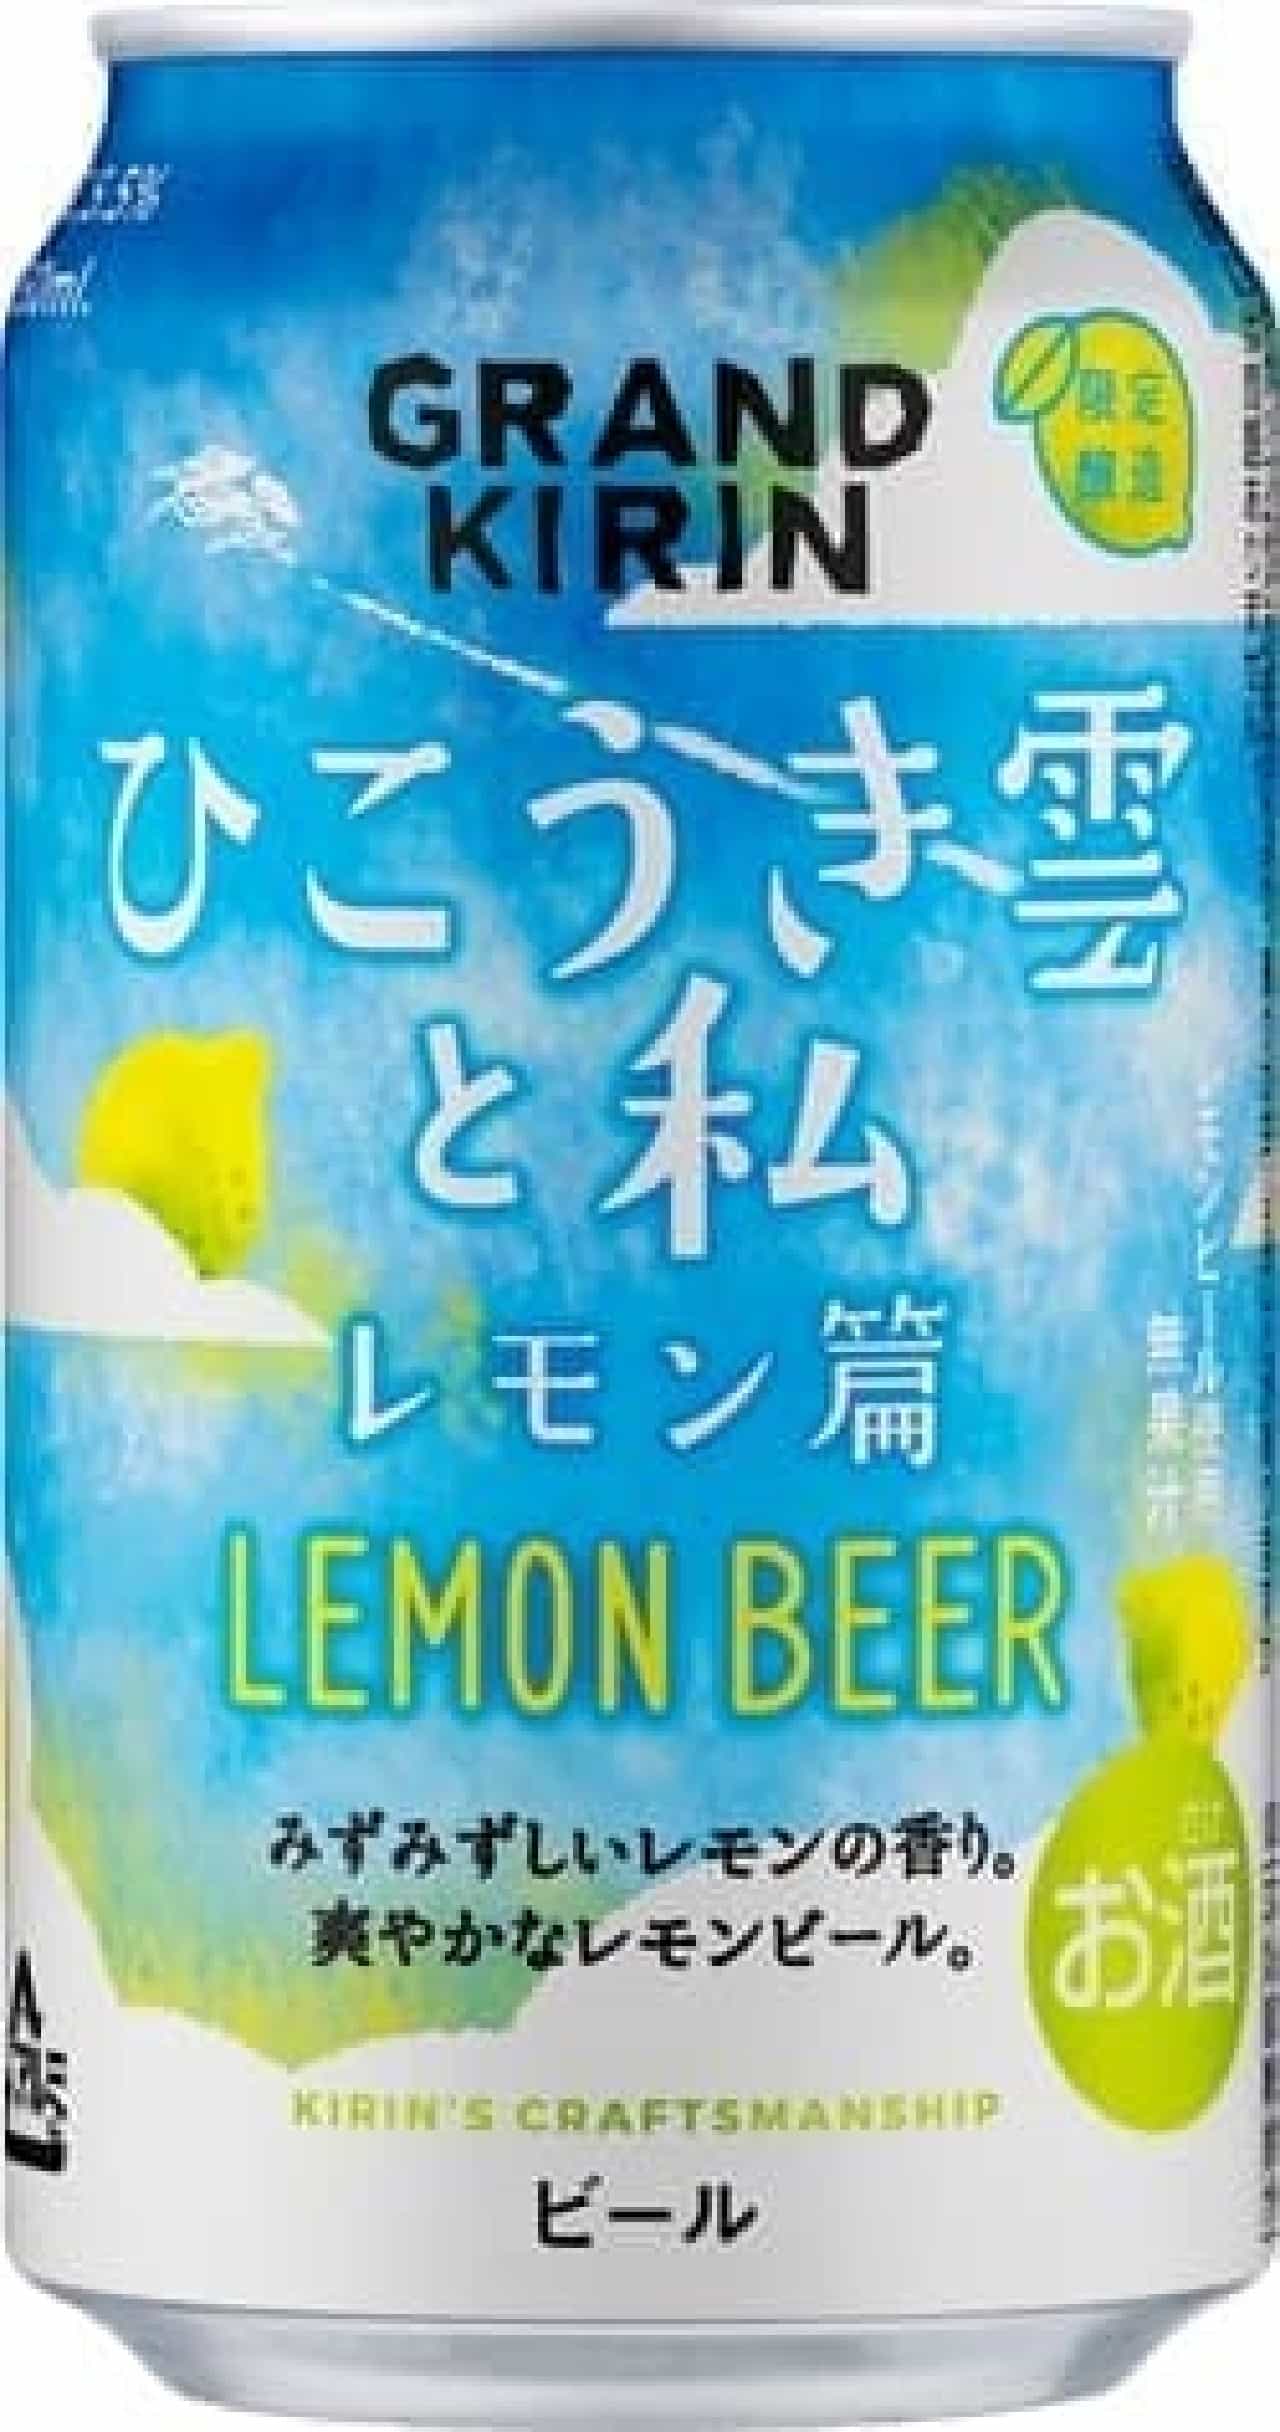 キリンビール「グランドキリン ひこうき雲と私 レモン篇」